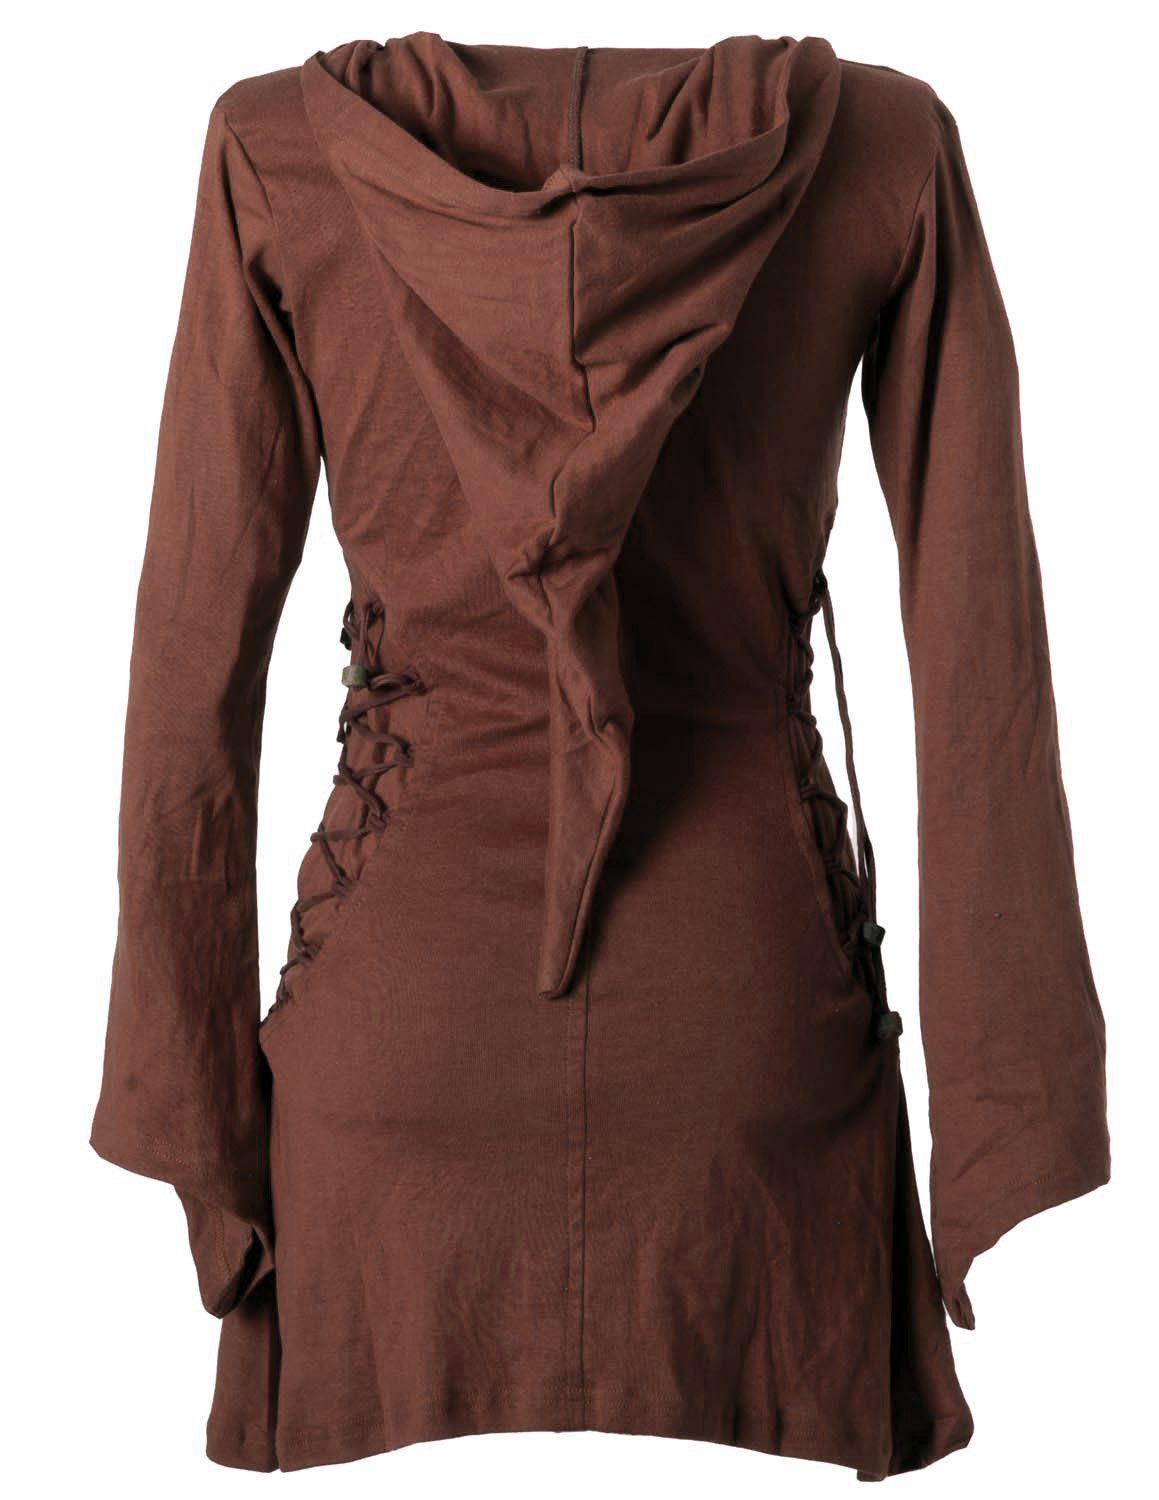 Vishes Zipfelkleid Elfenkleid mit Zipfelkapuze Bändern dunkelbraun Style Schnüren Gothik zum Ethno, Hoody